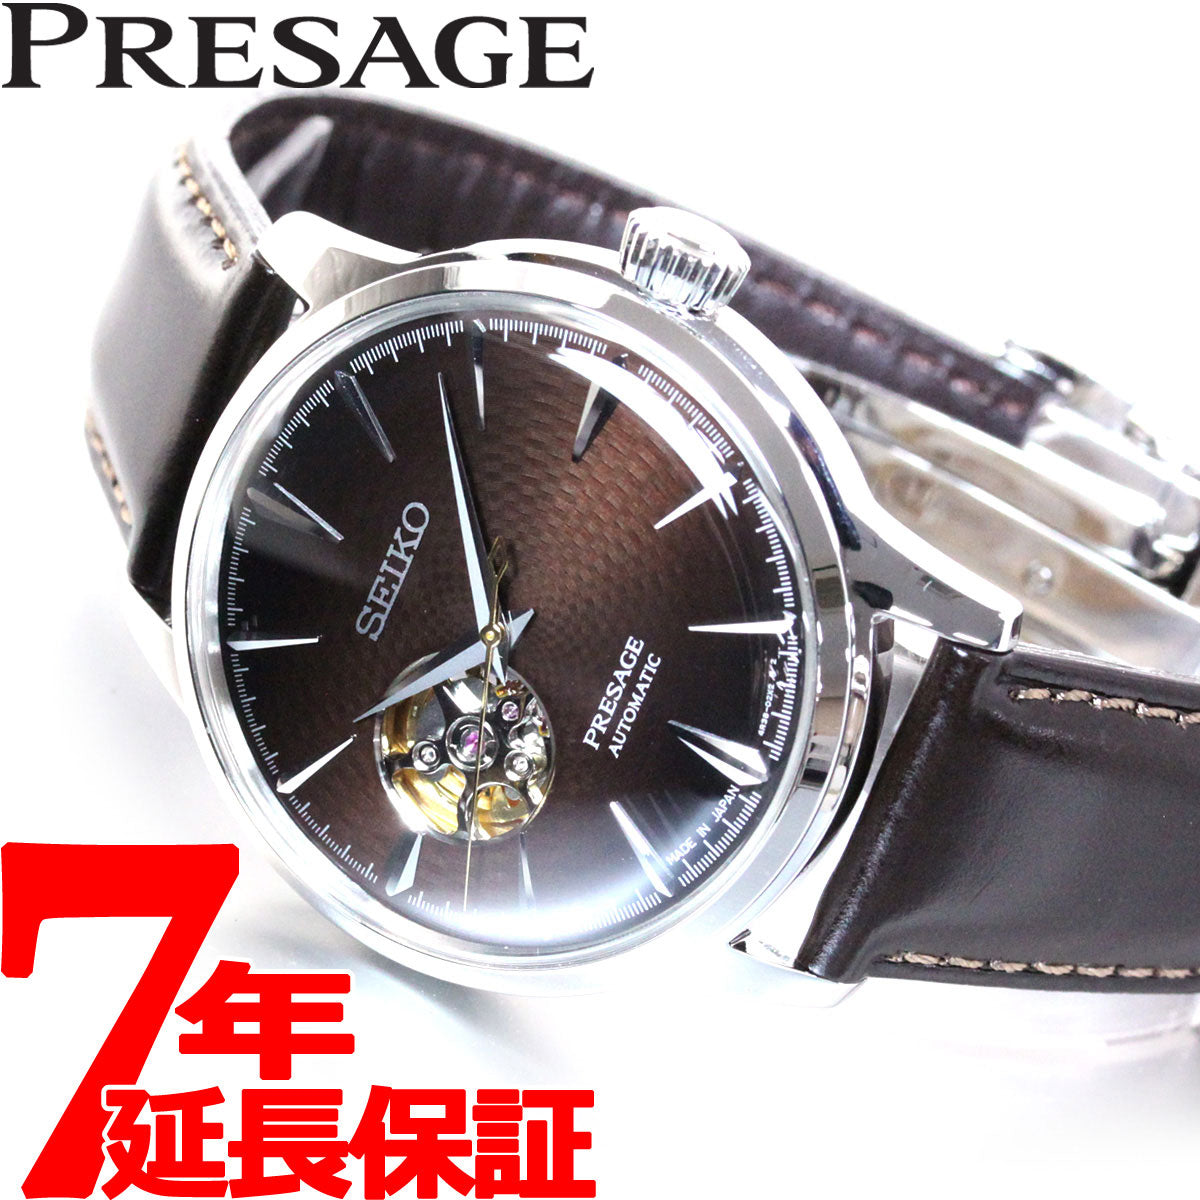 ケースの形状円形【新品】SEIKO セイコー PRESAGE プレサージュ SARY157 - 腕時計(アナログ)